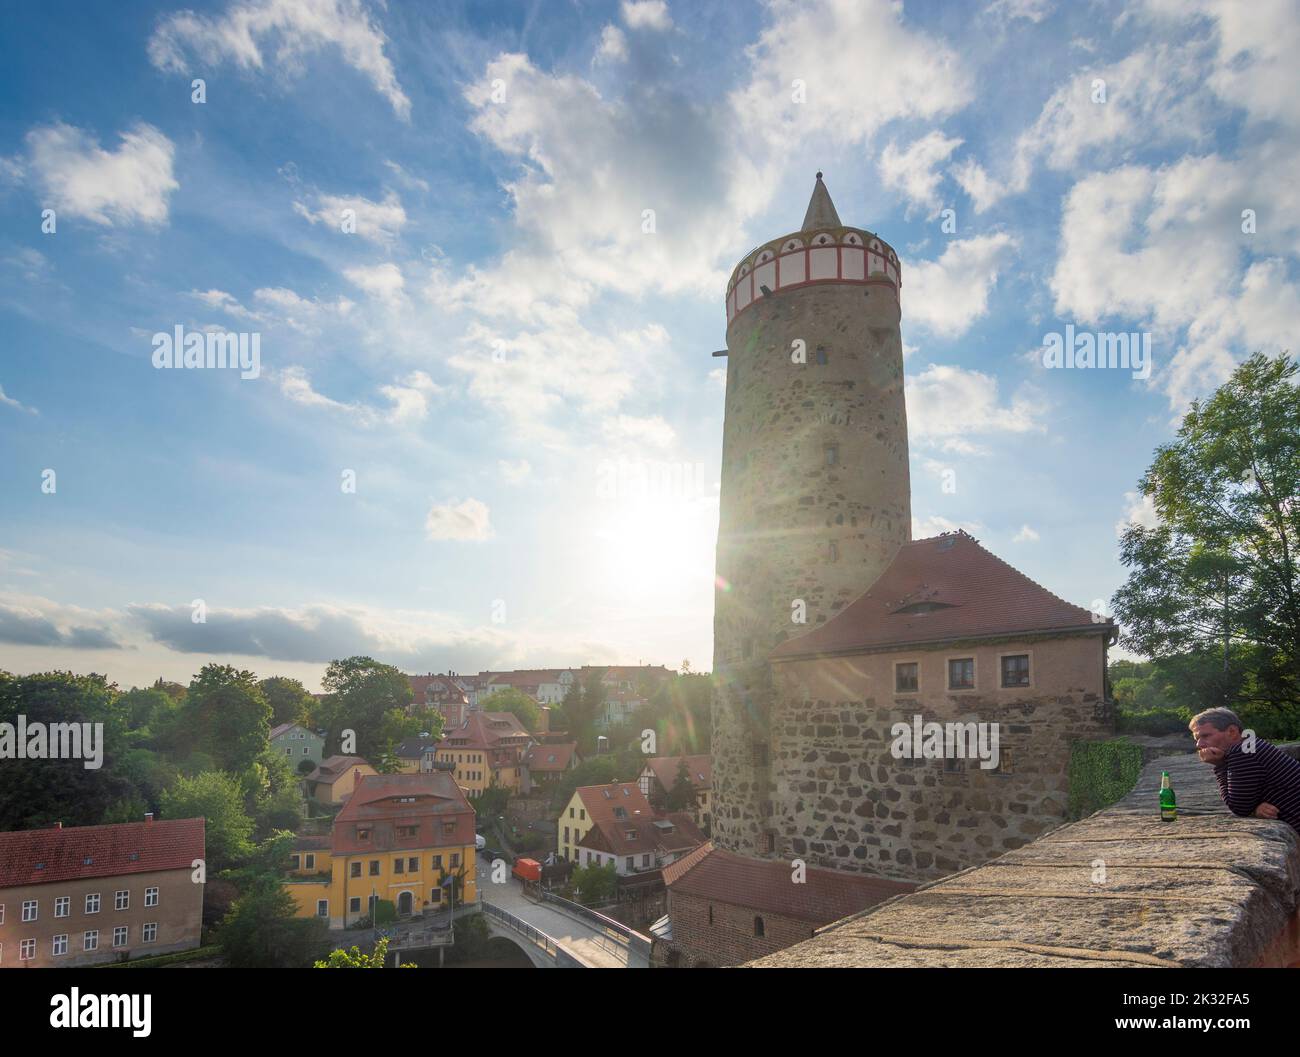 Bautzen: tower Alte Wasserkunst (Old Waterworks) in Oberlausitz, Upper Lusatia, Sachsen, Saxony, Germany Stock Photo